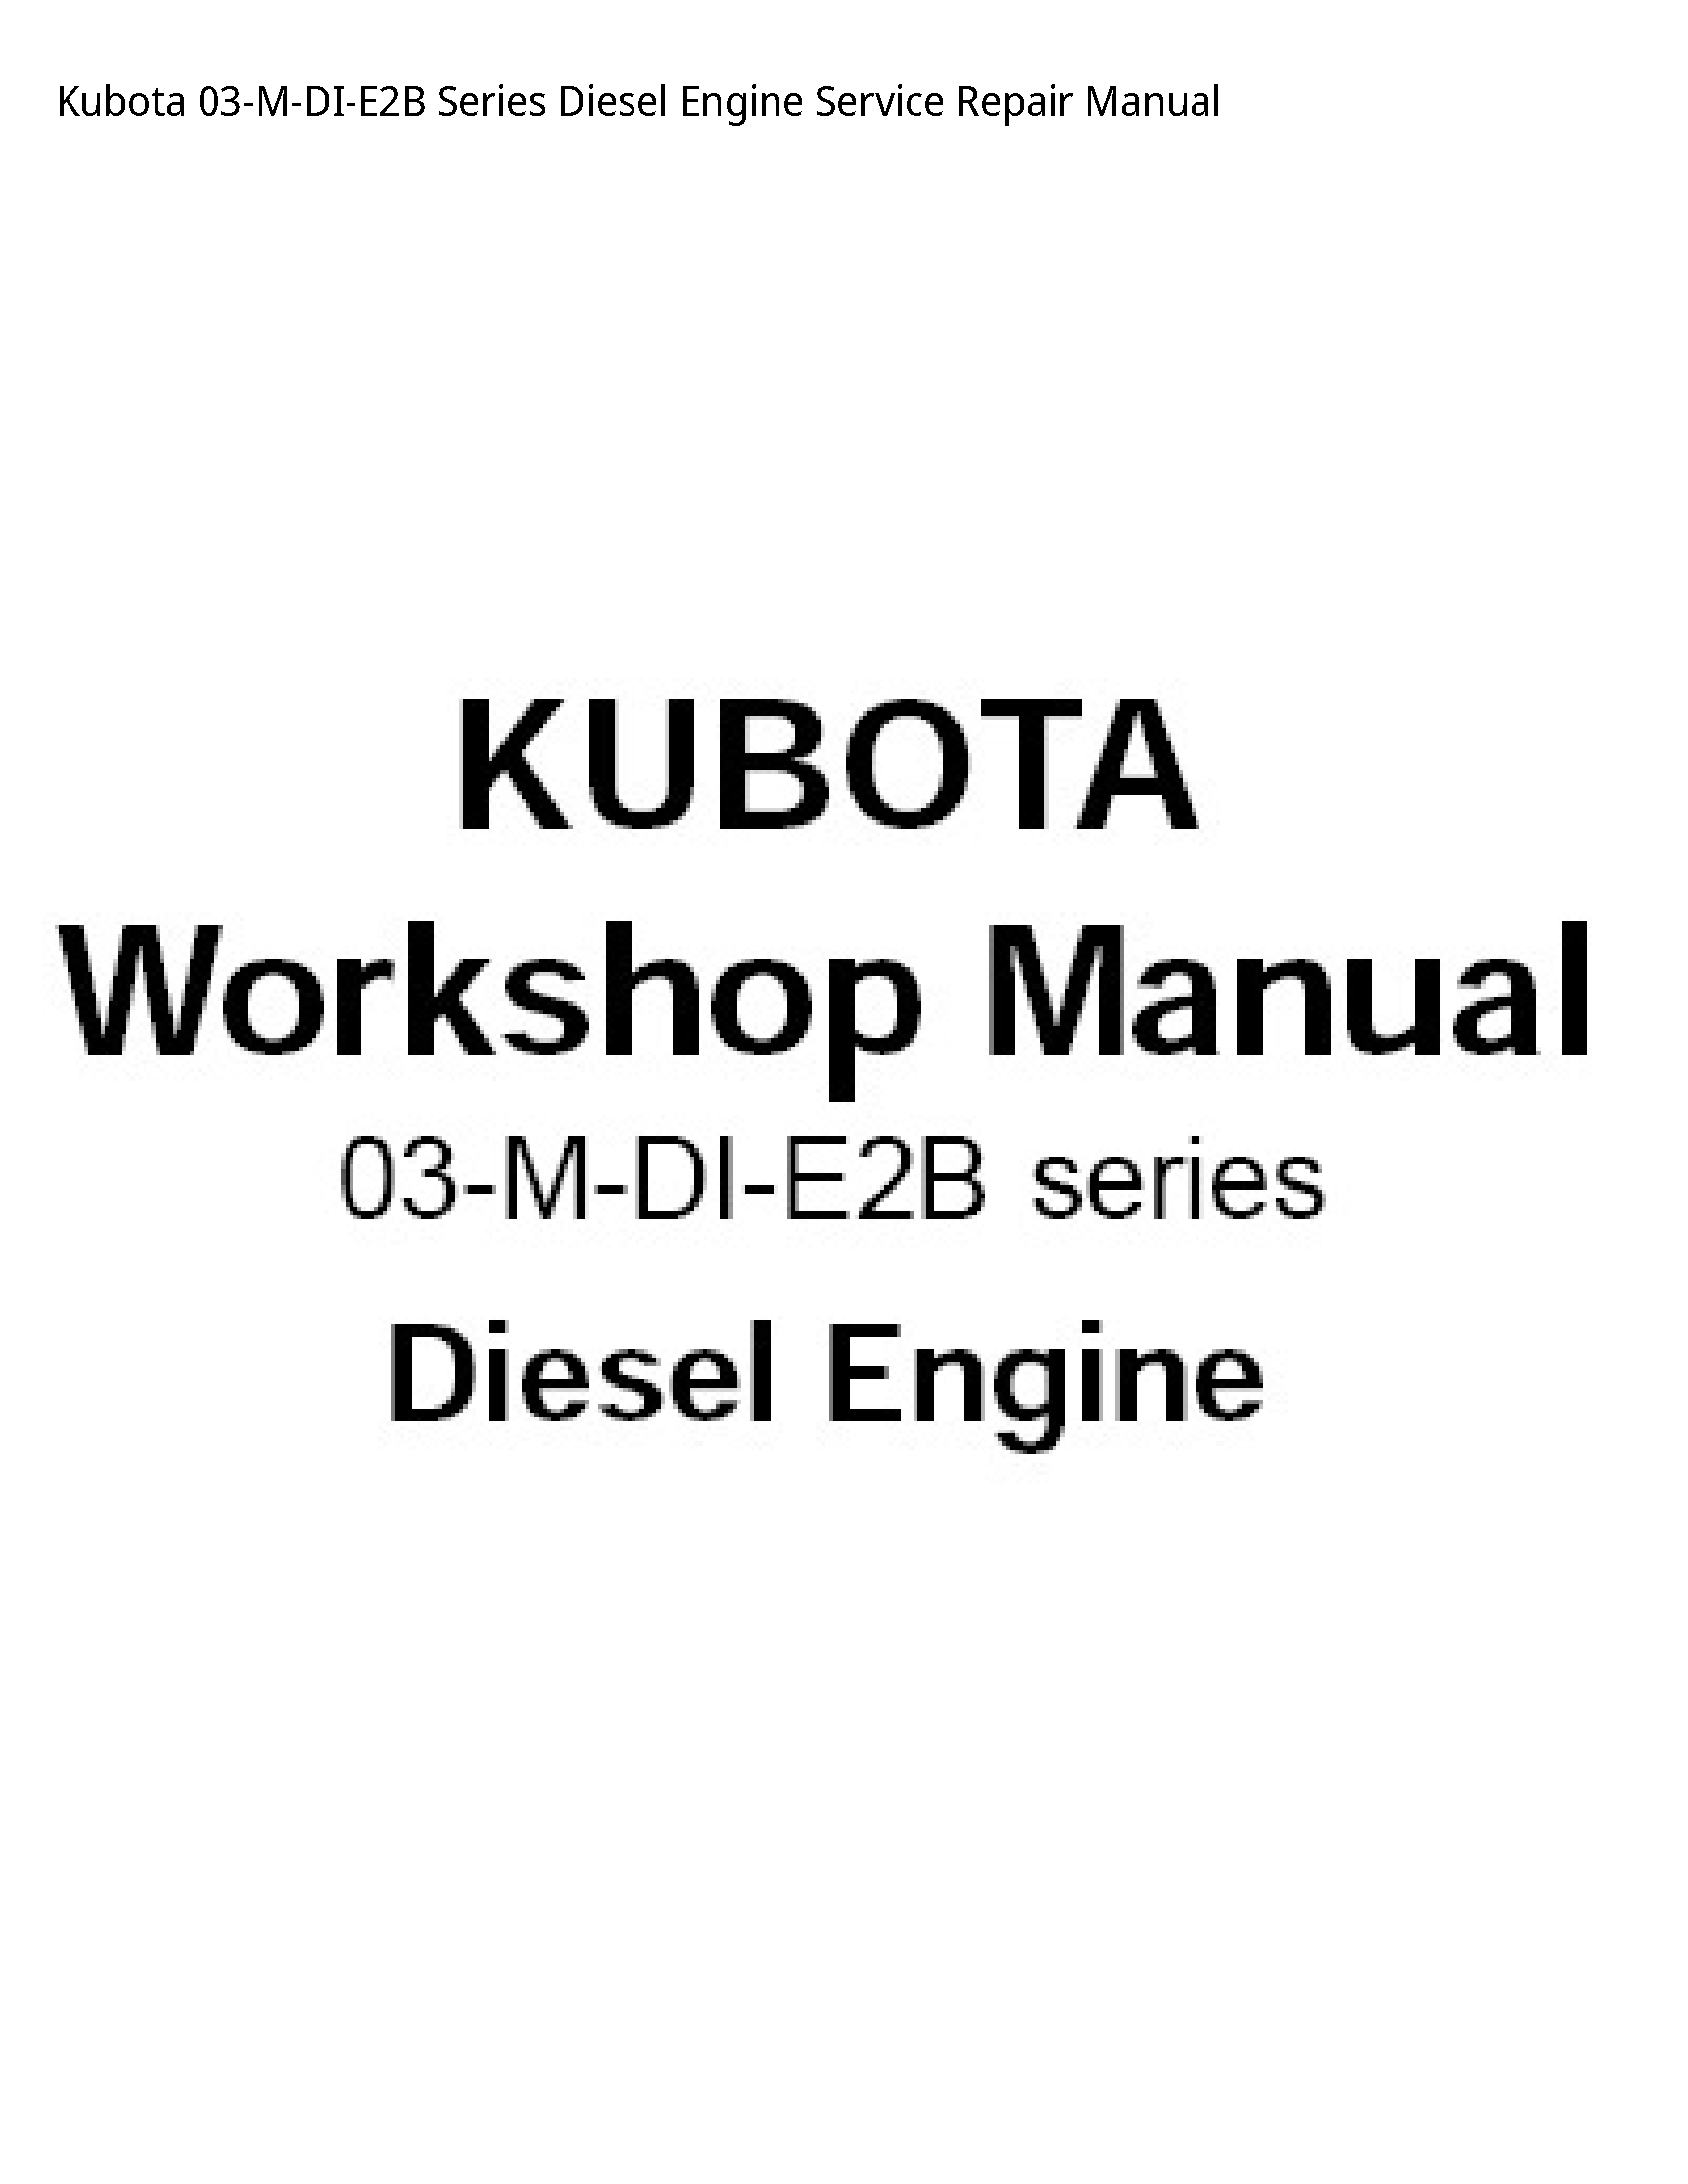 Kubota 03-M-DI-E2B Series Diesel Engine manual